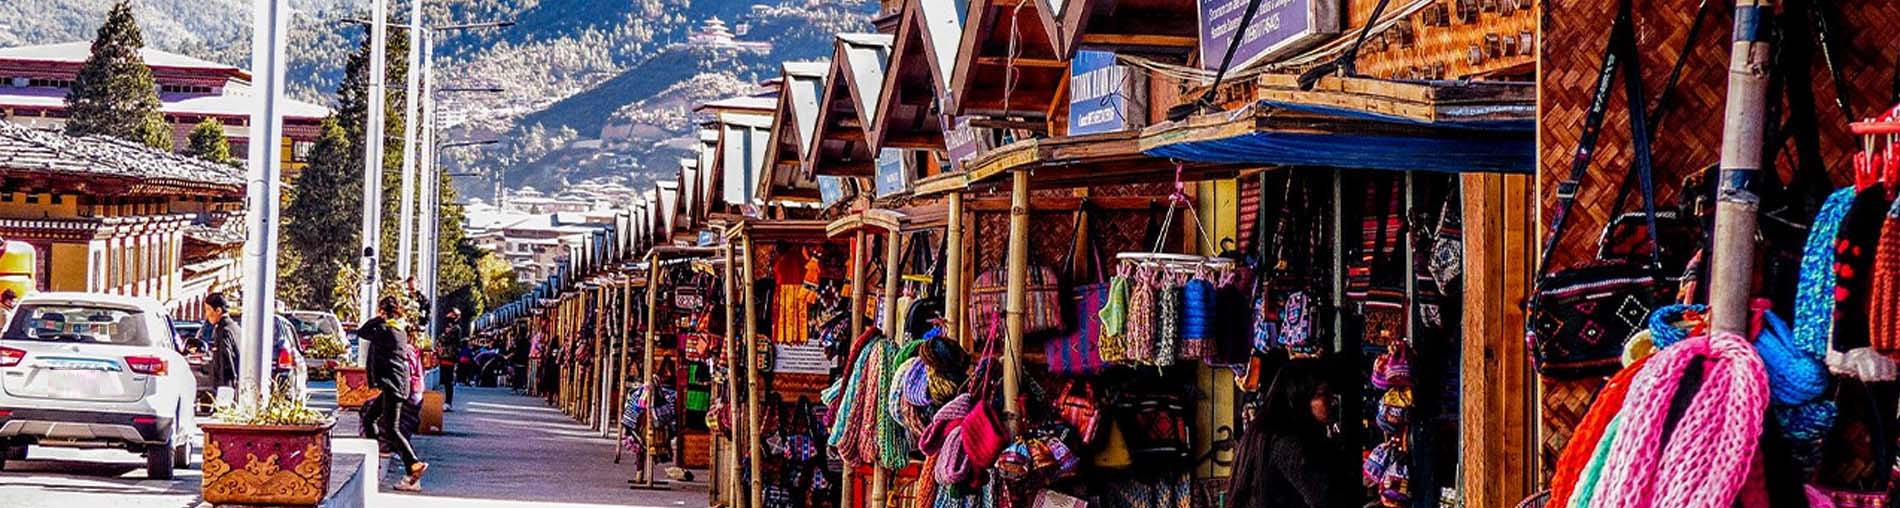 Shopping Spots In Bhutan